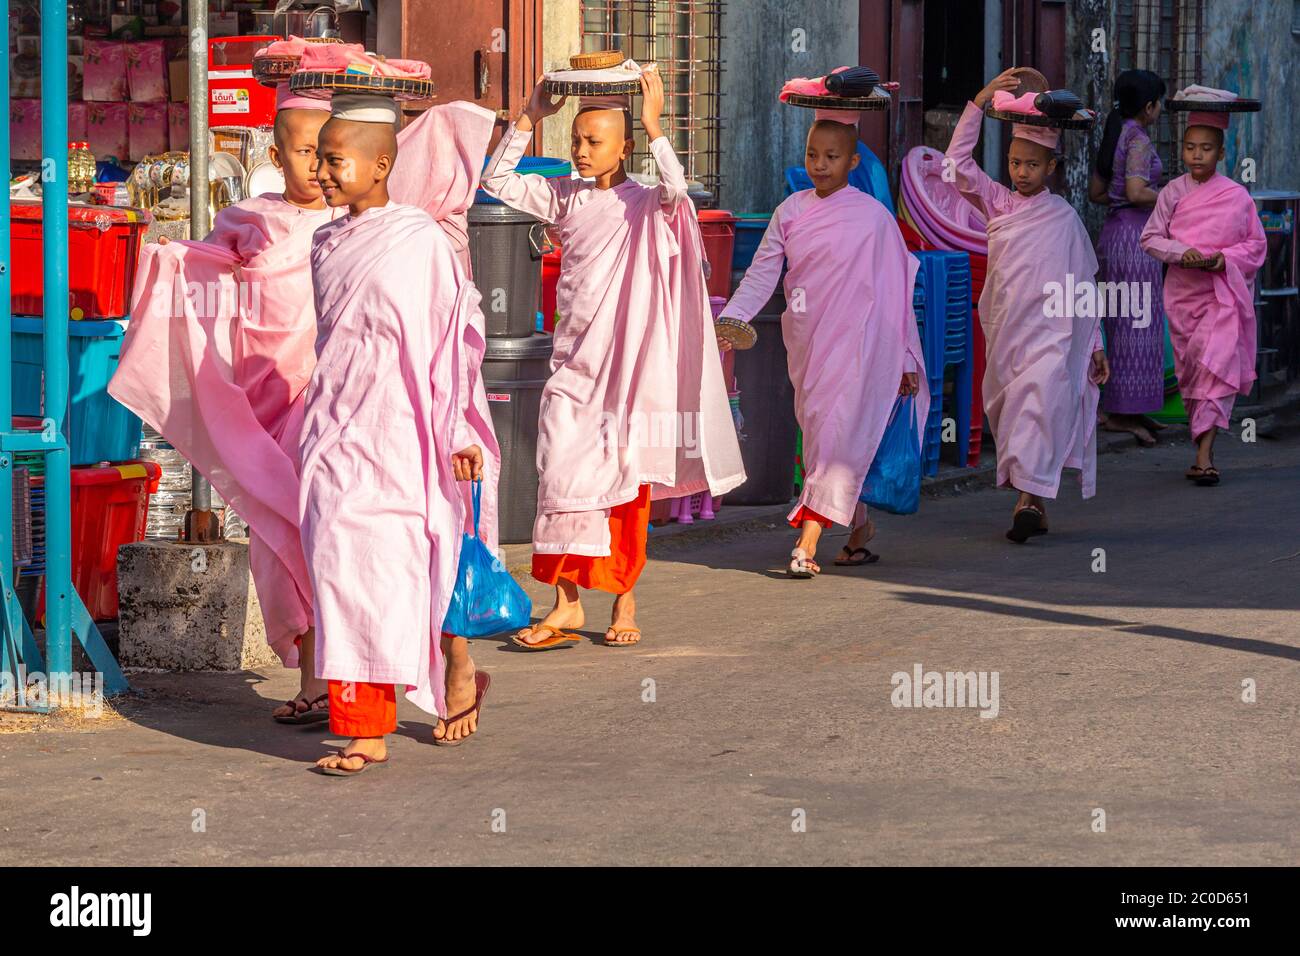 Les religieuses bouddhistes cooptent pour des offres de personnes ou de vendeurs dans le sud du Myanmar Banque D'Images